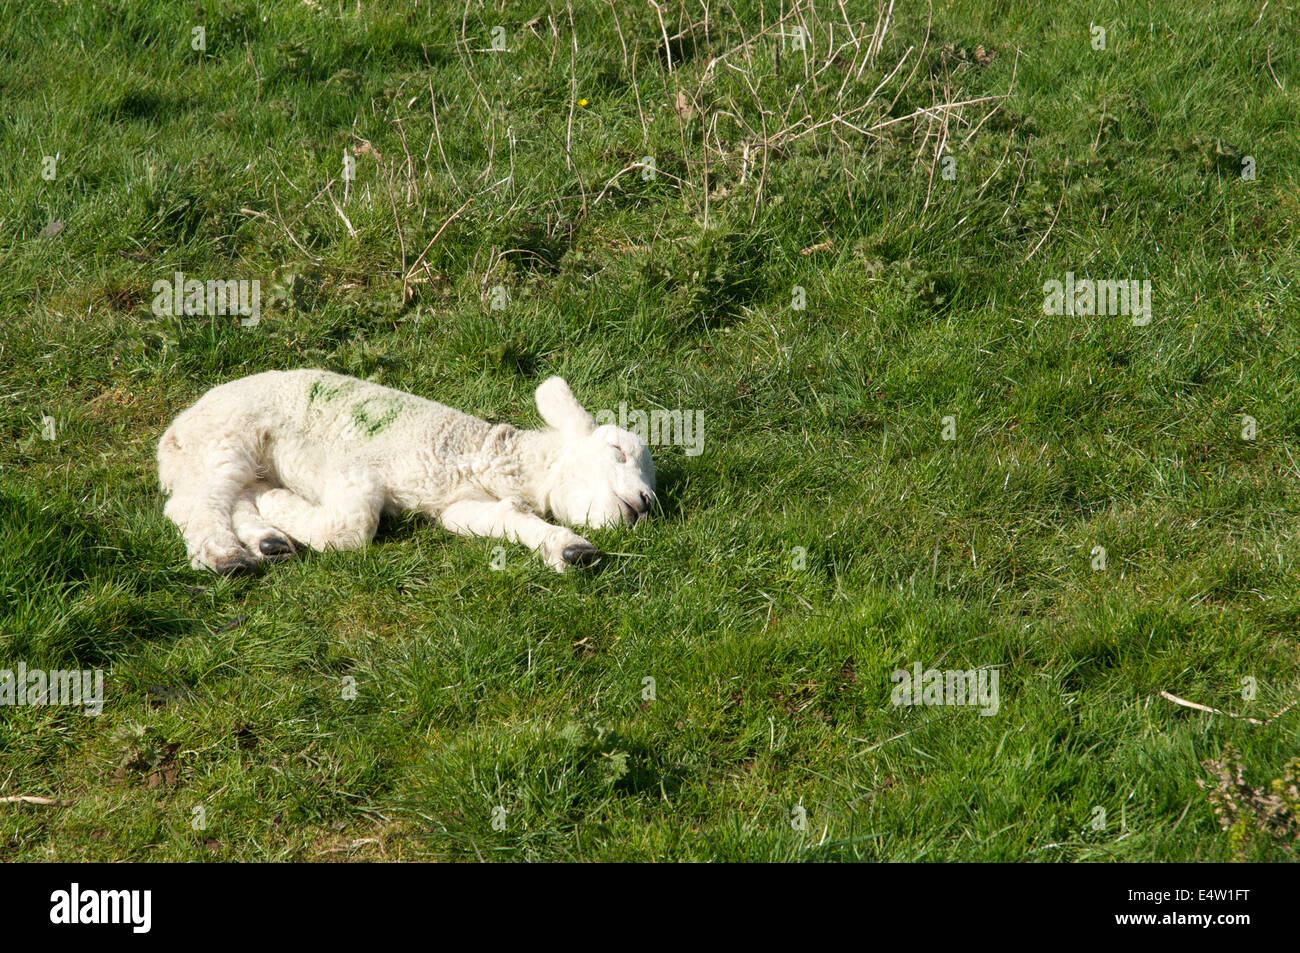 Photographie d'un agneau de printemps, abandonnées sur le sol un sommeil Banque D'Images